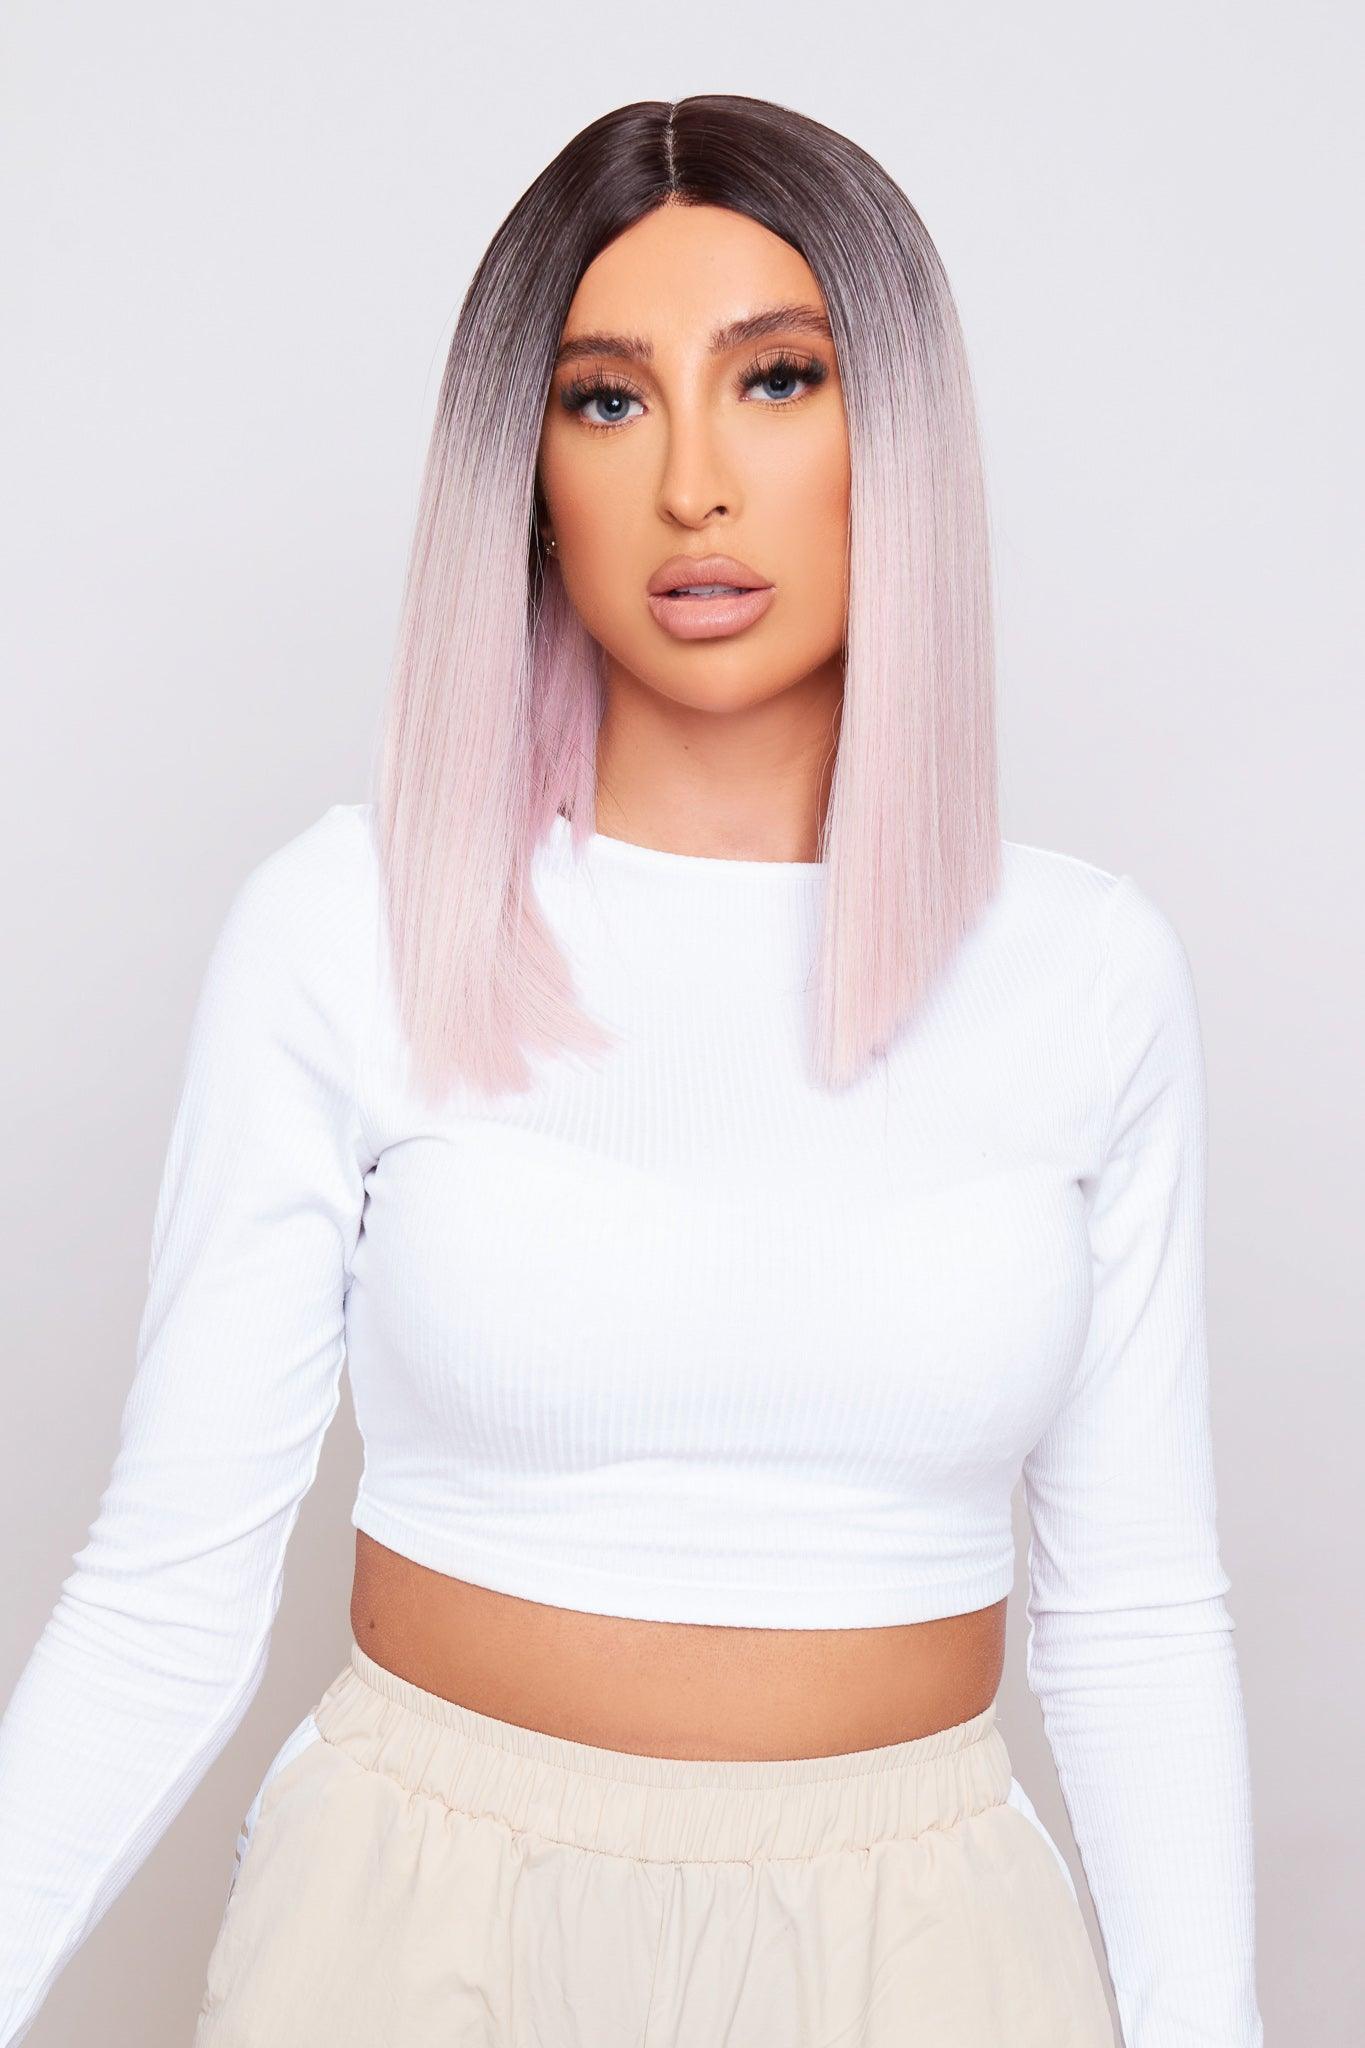 pink blunt cut bob wig being worn by beautiful model